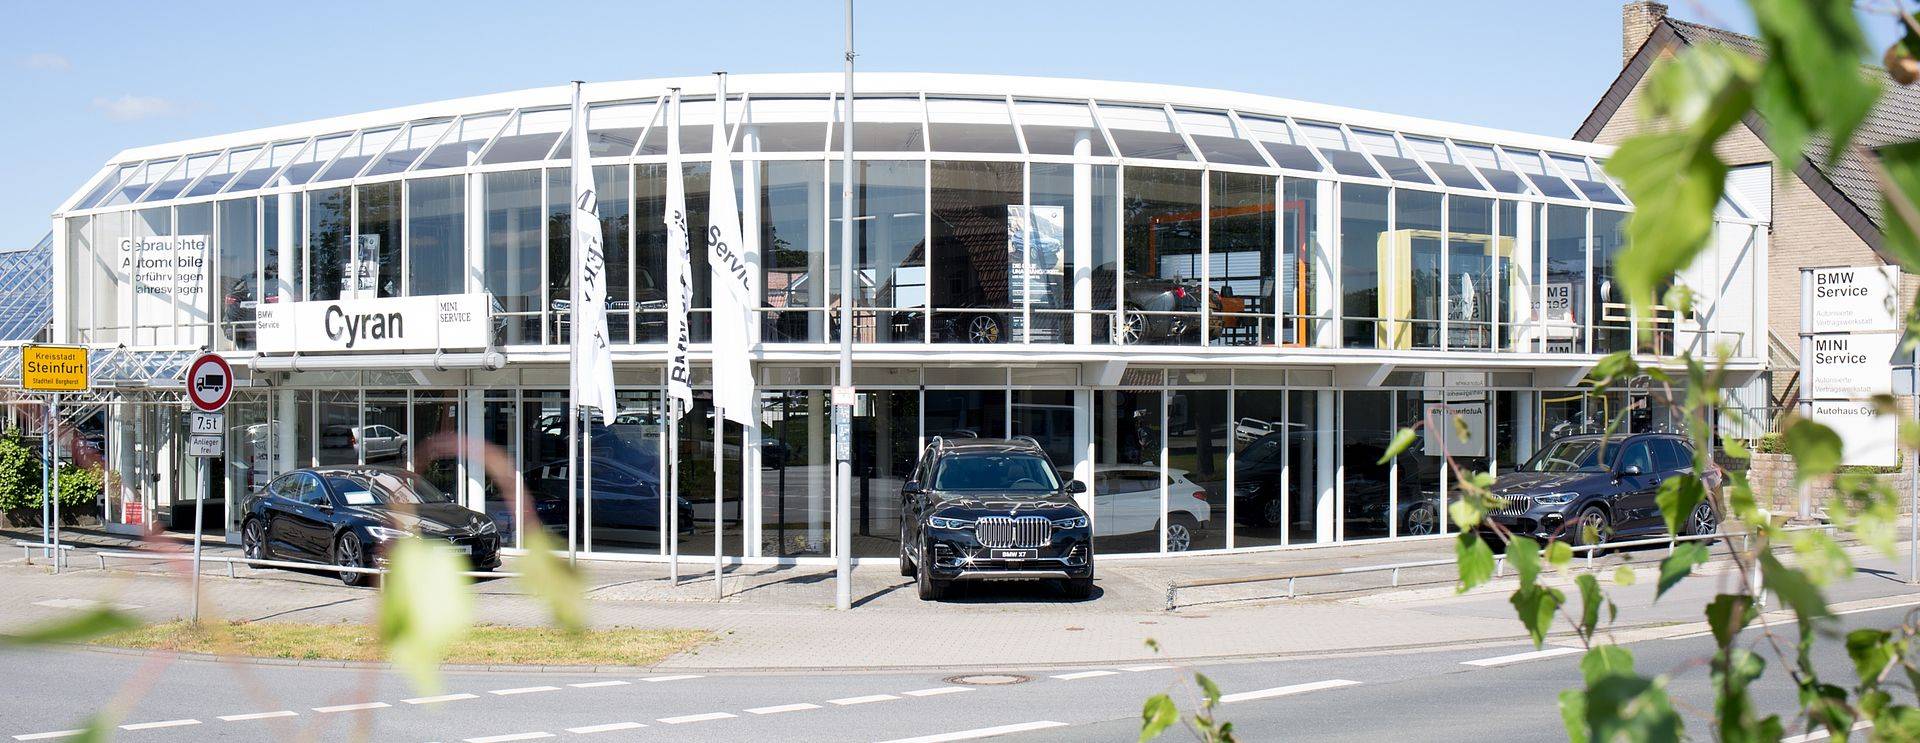 BMW-Autohaus-Münster:-Cyran-Steinfurt-näher-als-Sie-denken!